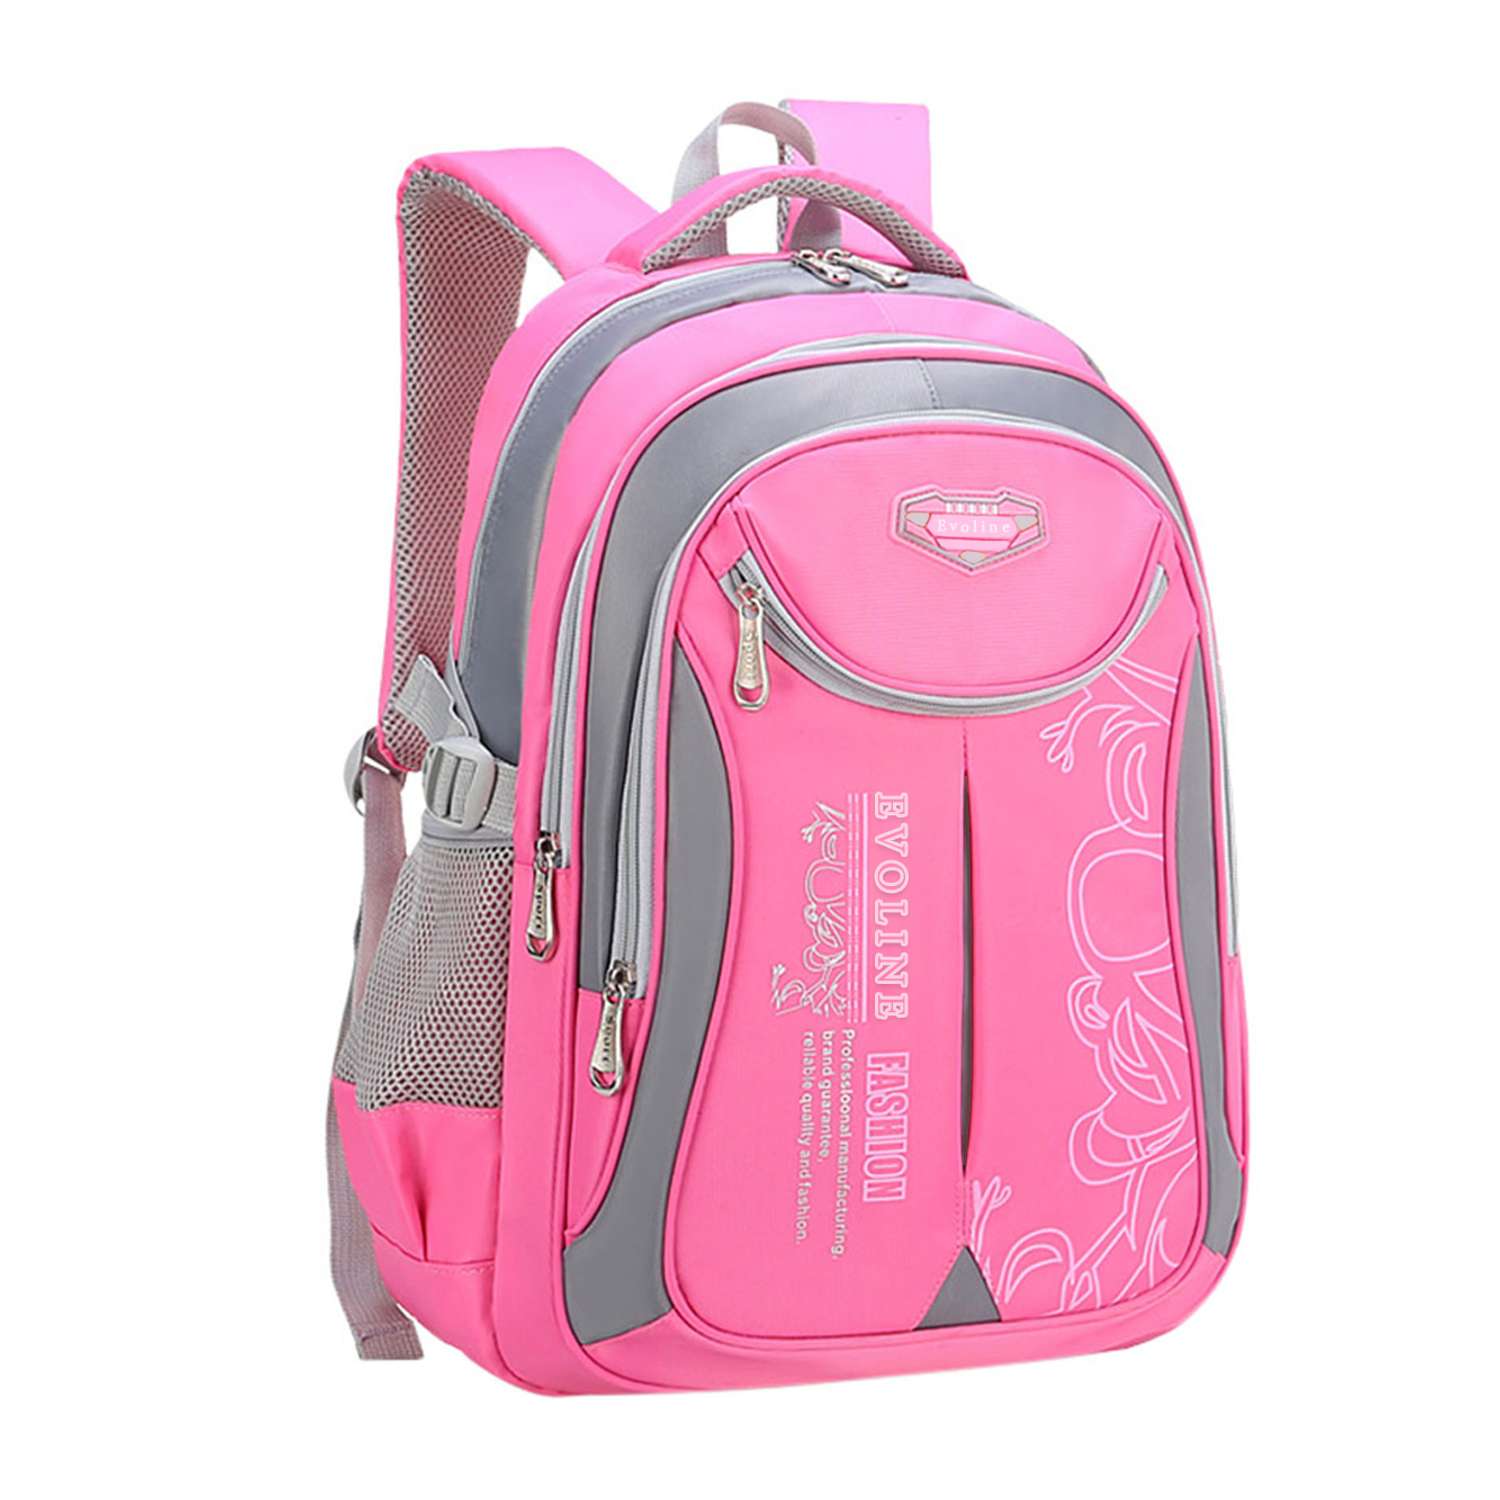 Рюкзак школьный Evoline большой розовый EVO-159-rose - фото 1